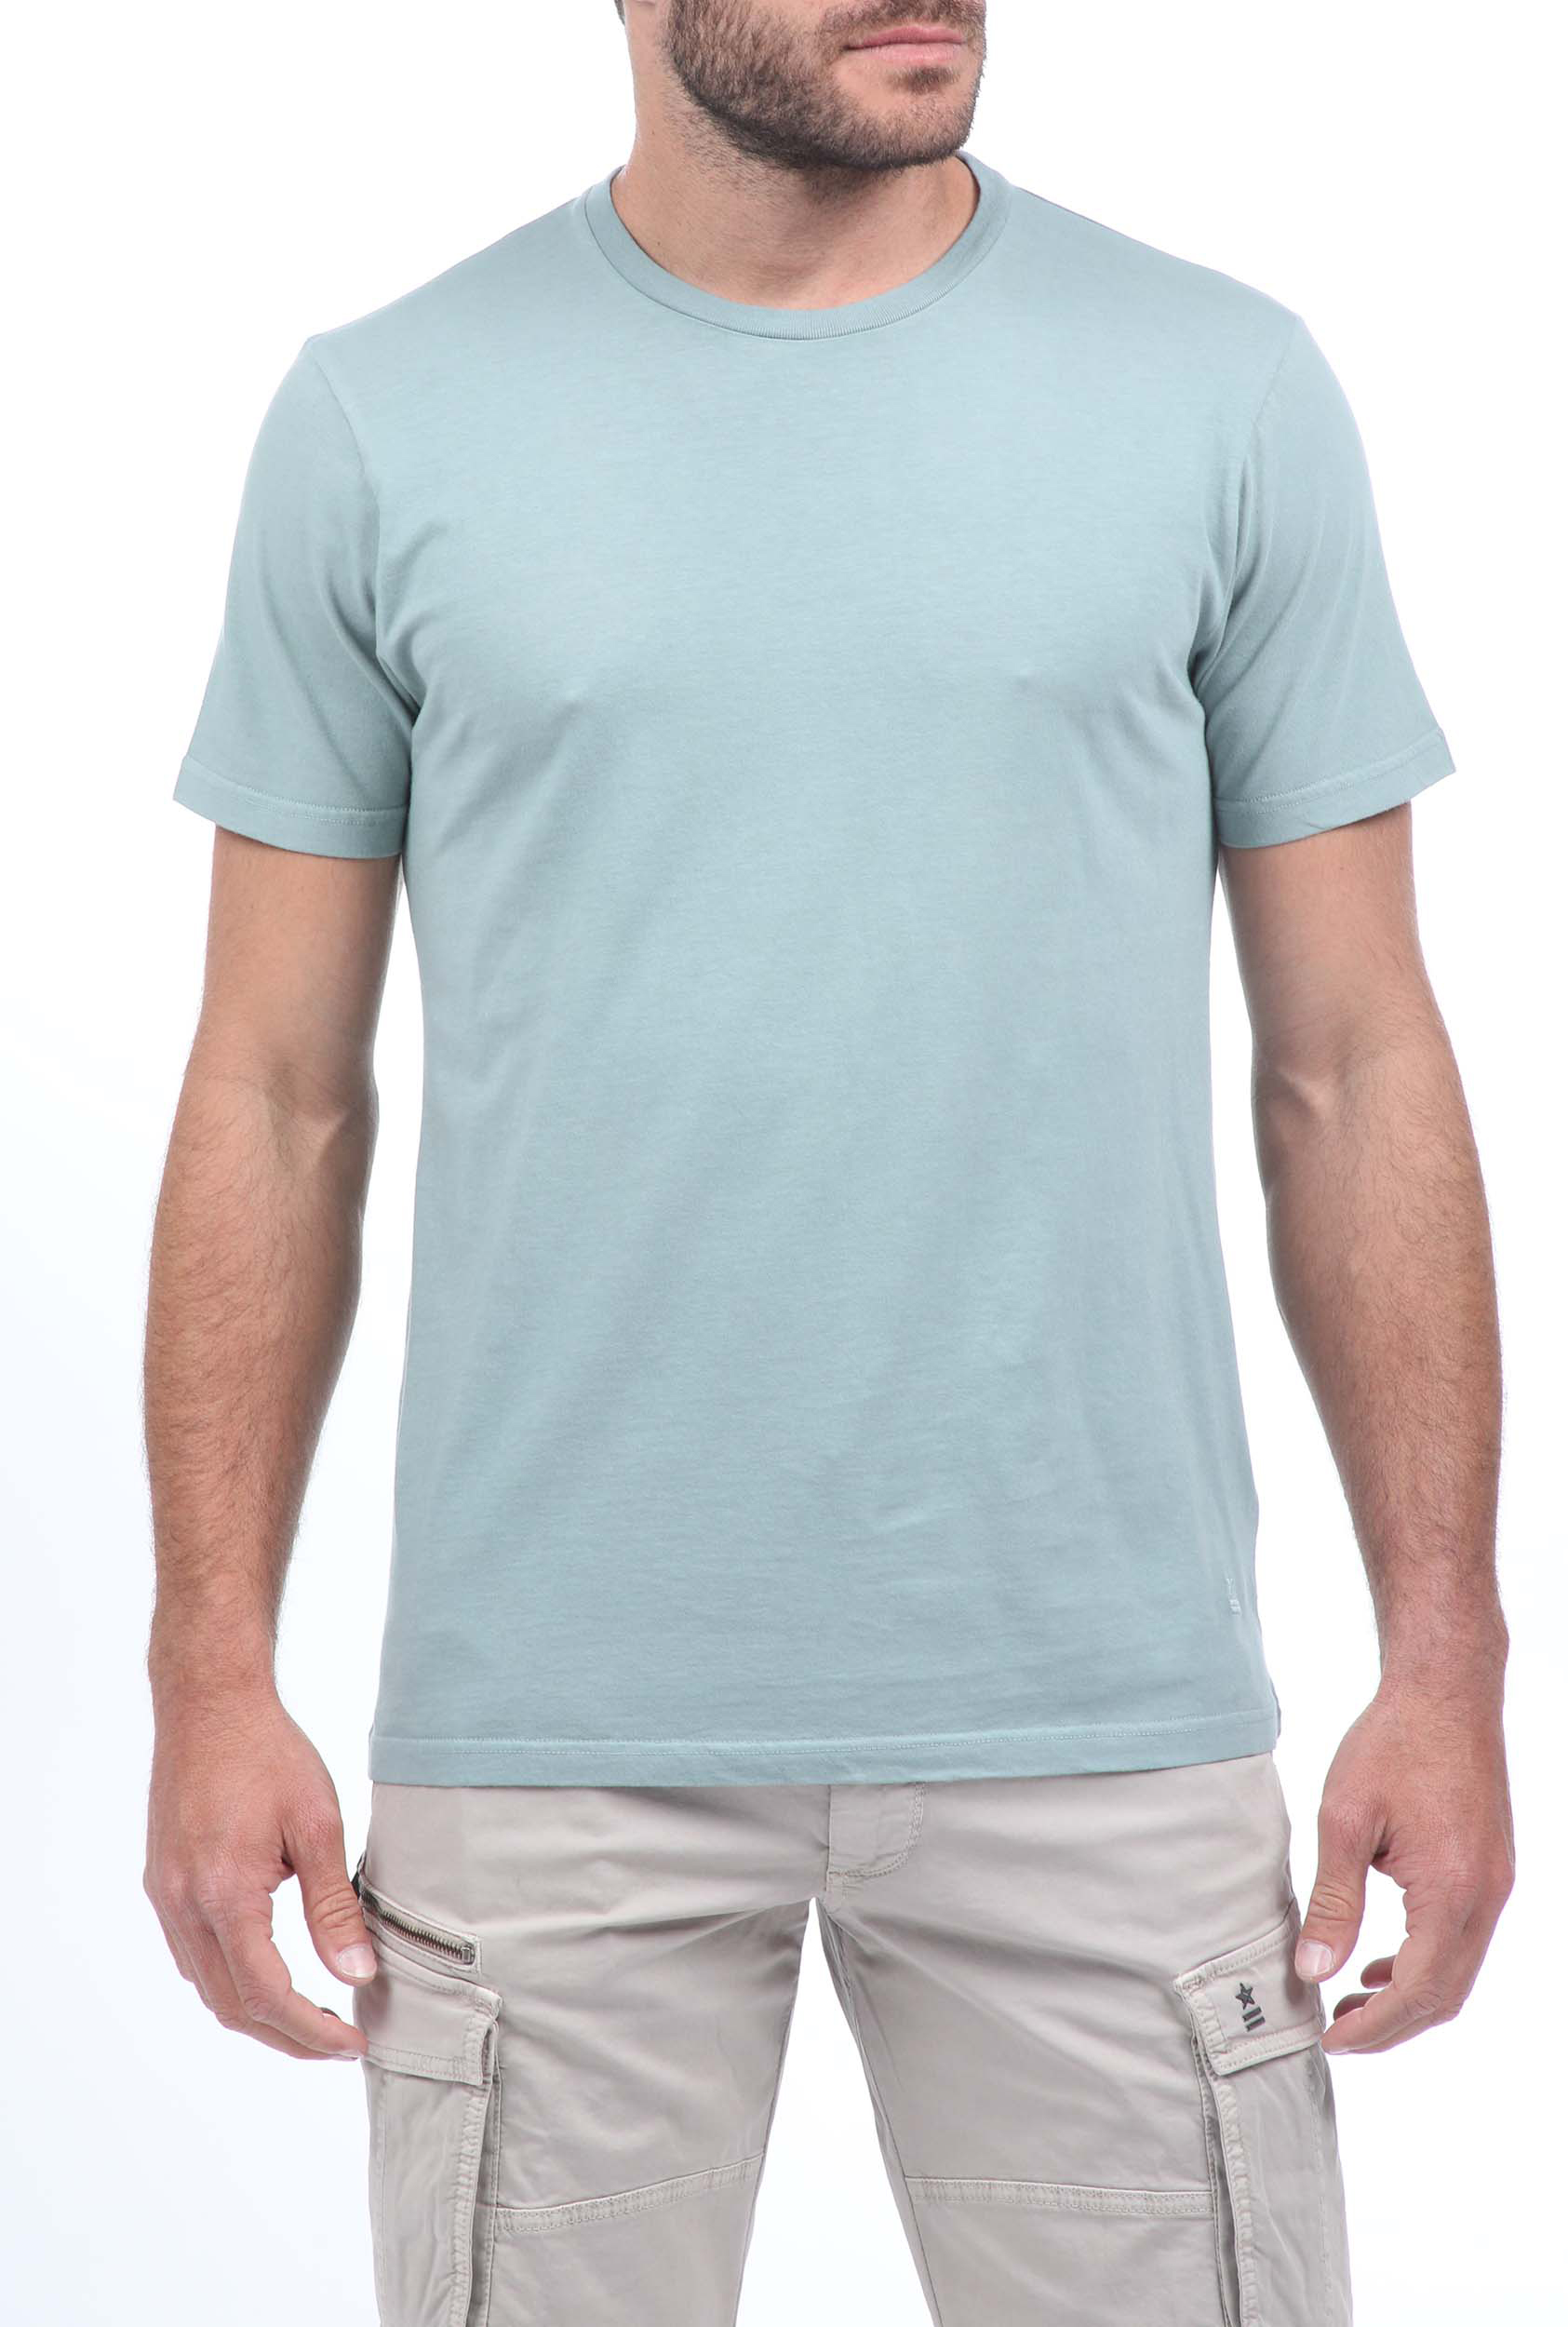 Ανδρικά/Ρούχα/Μπλούζες/Κοντομάνικες UNIFORM - Ανδρικό t-shirt UNIFORM μπλε